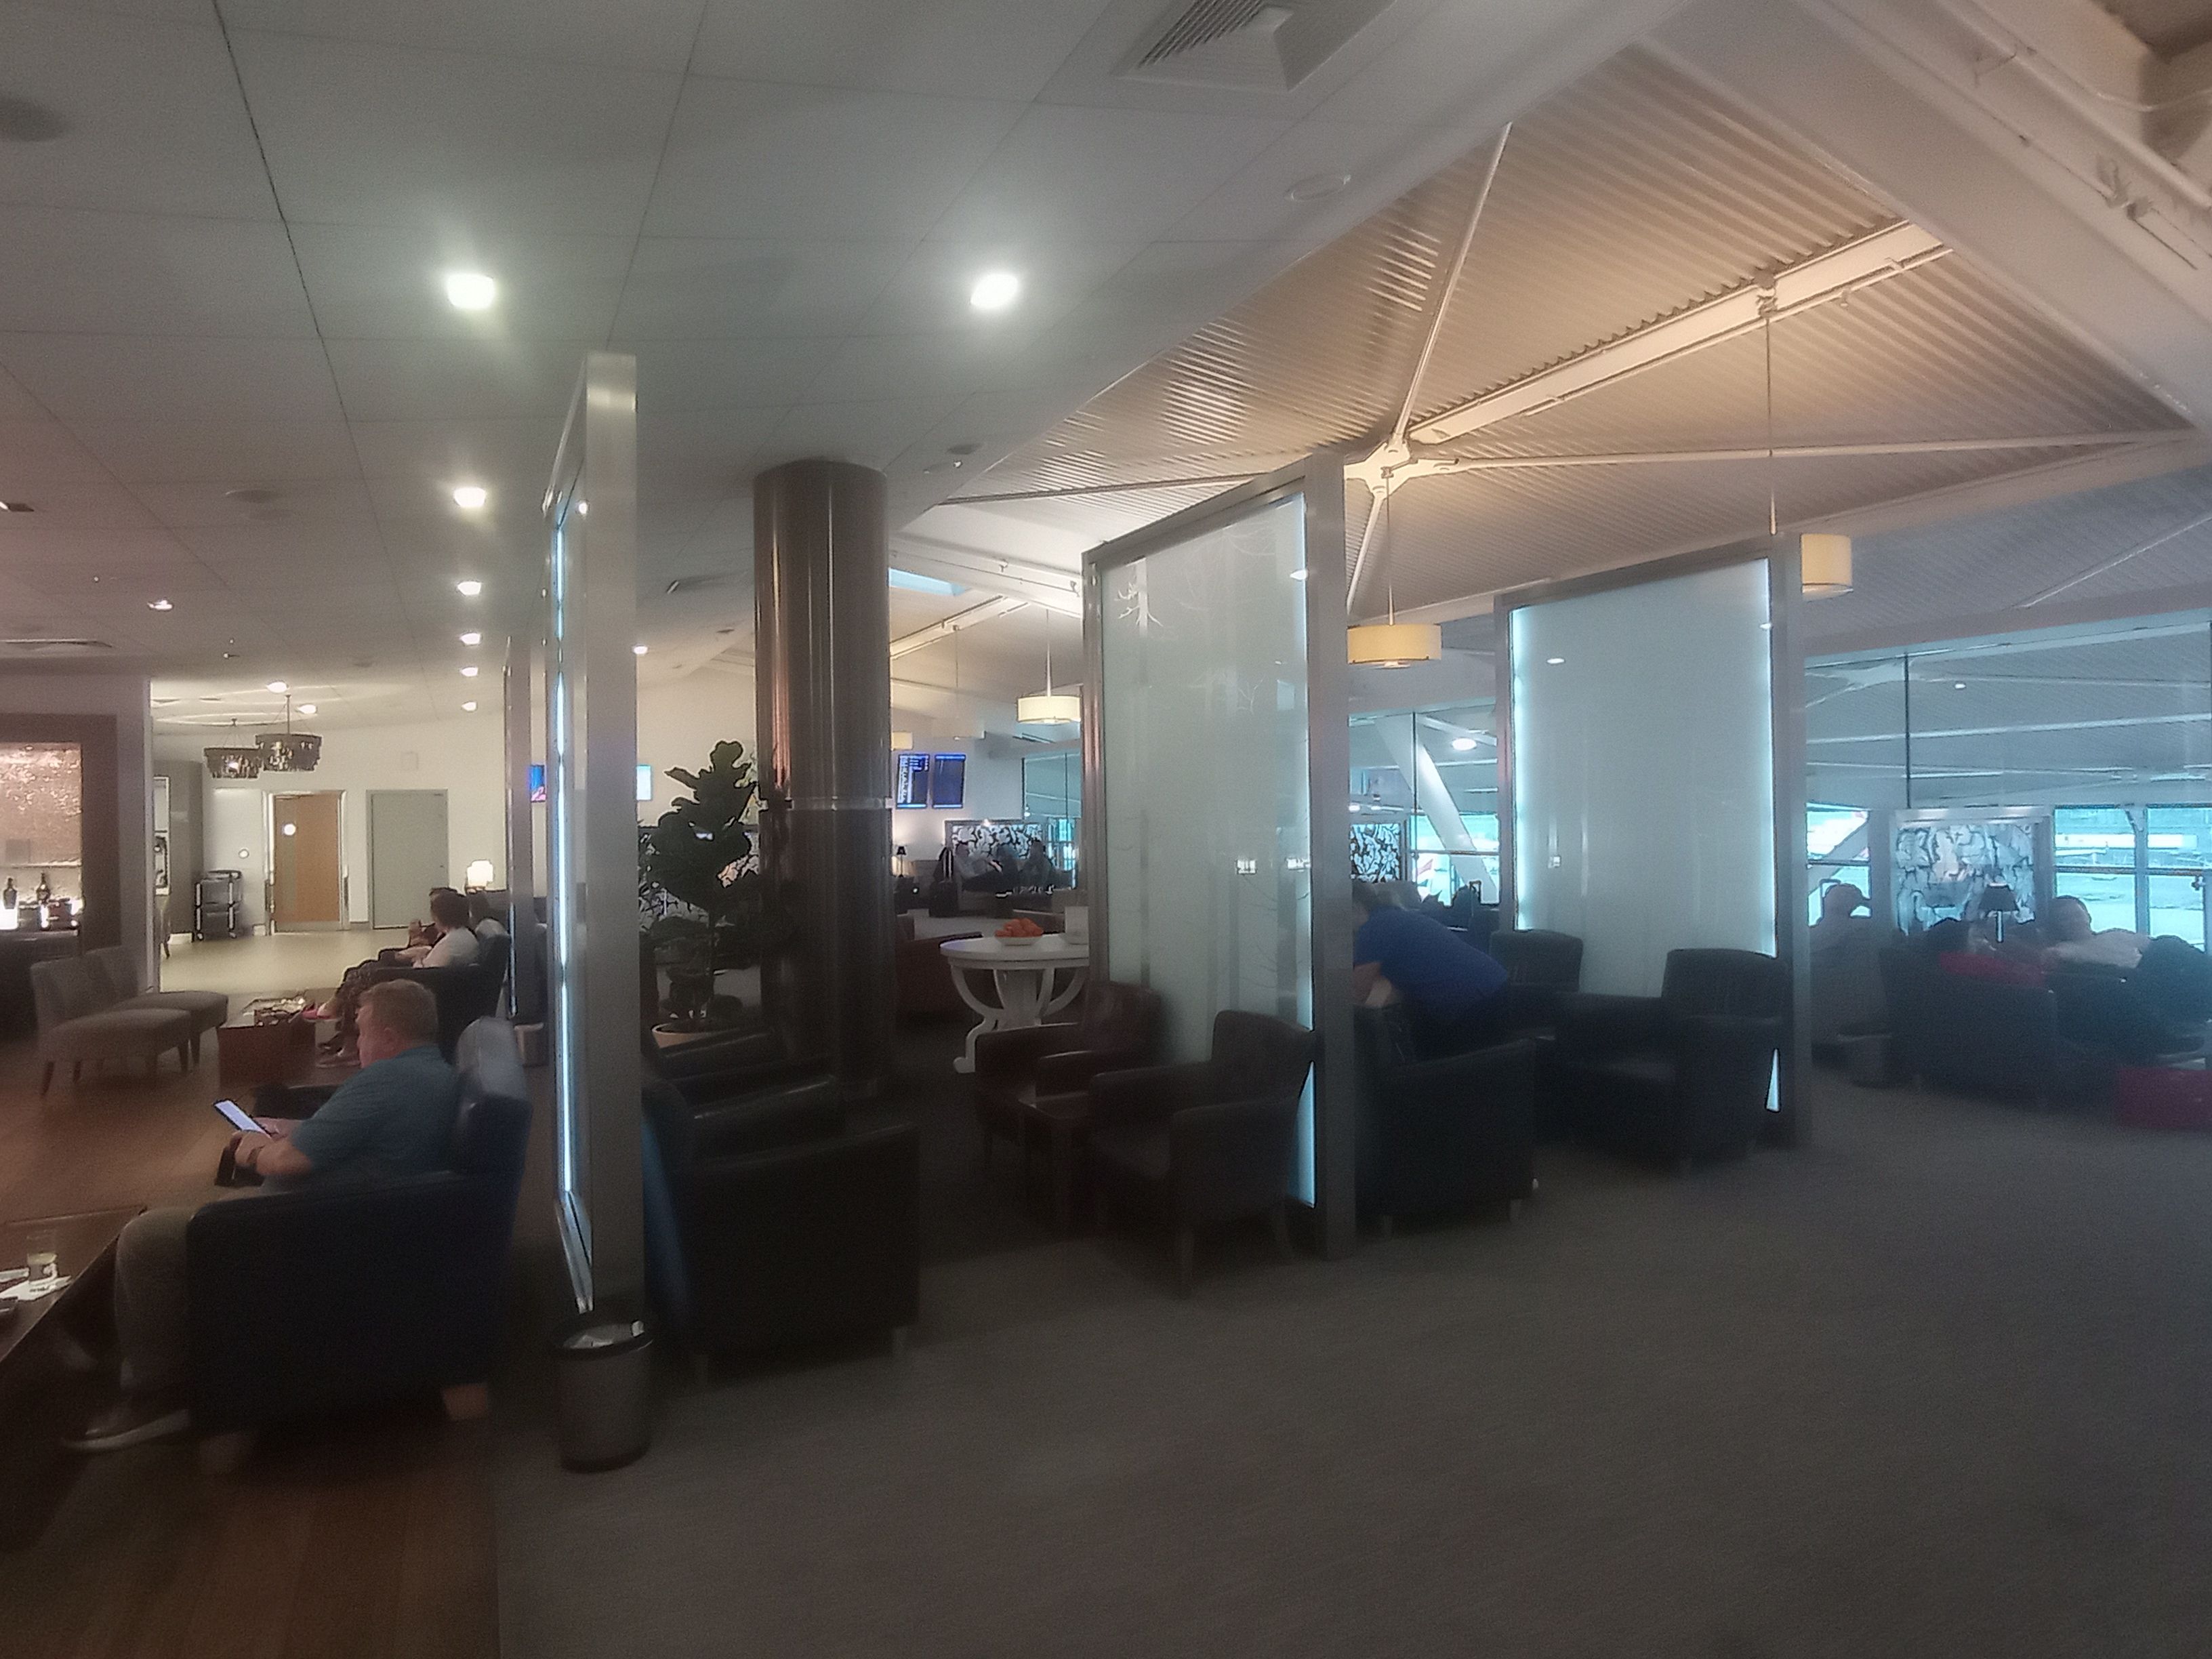 Inside the British Airways lounge